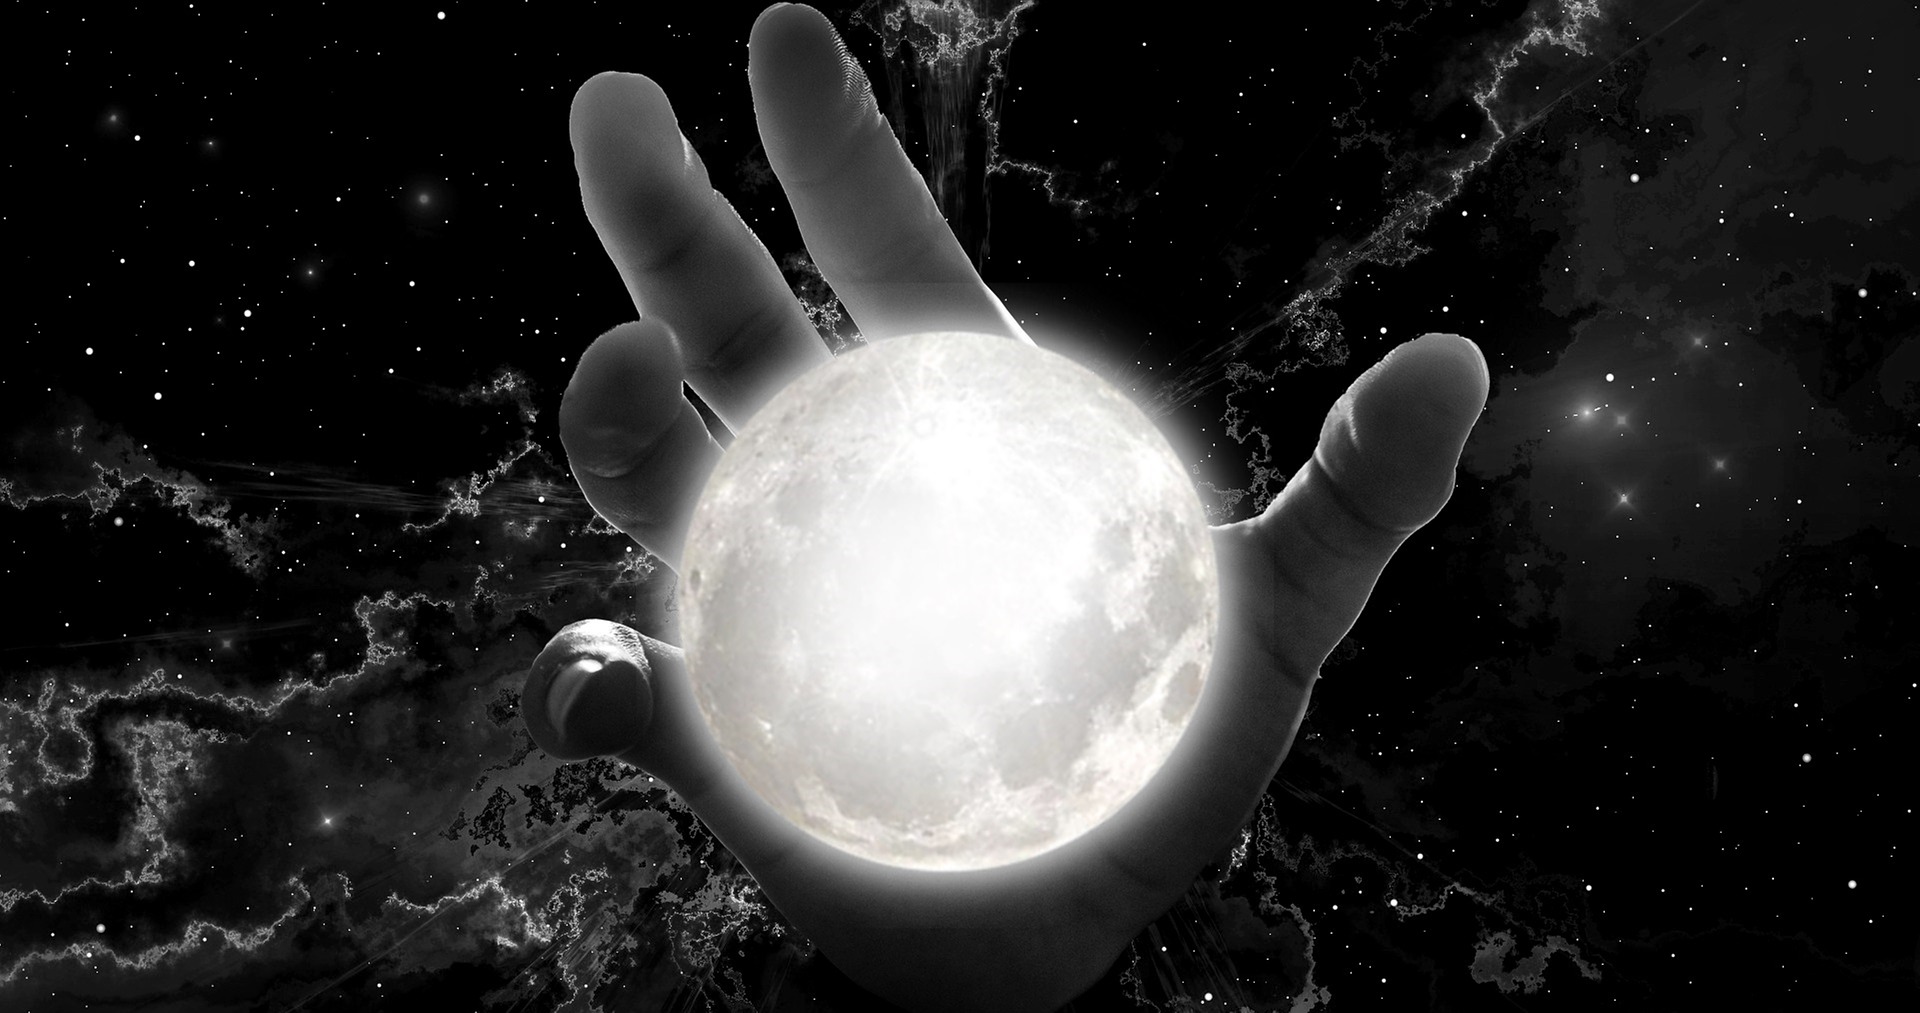 Una mano envuelve a la luna; al fondo se observa el cielo oscuro.